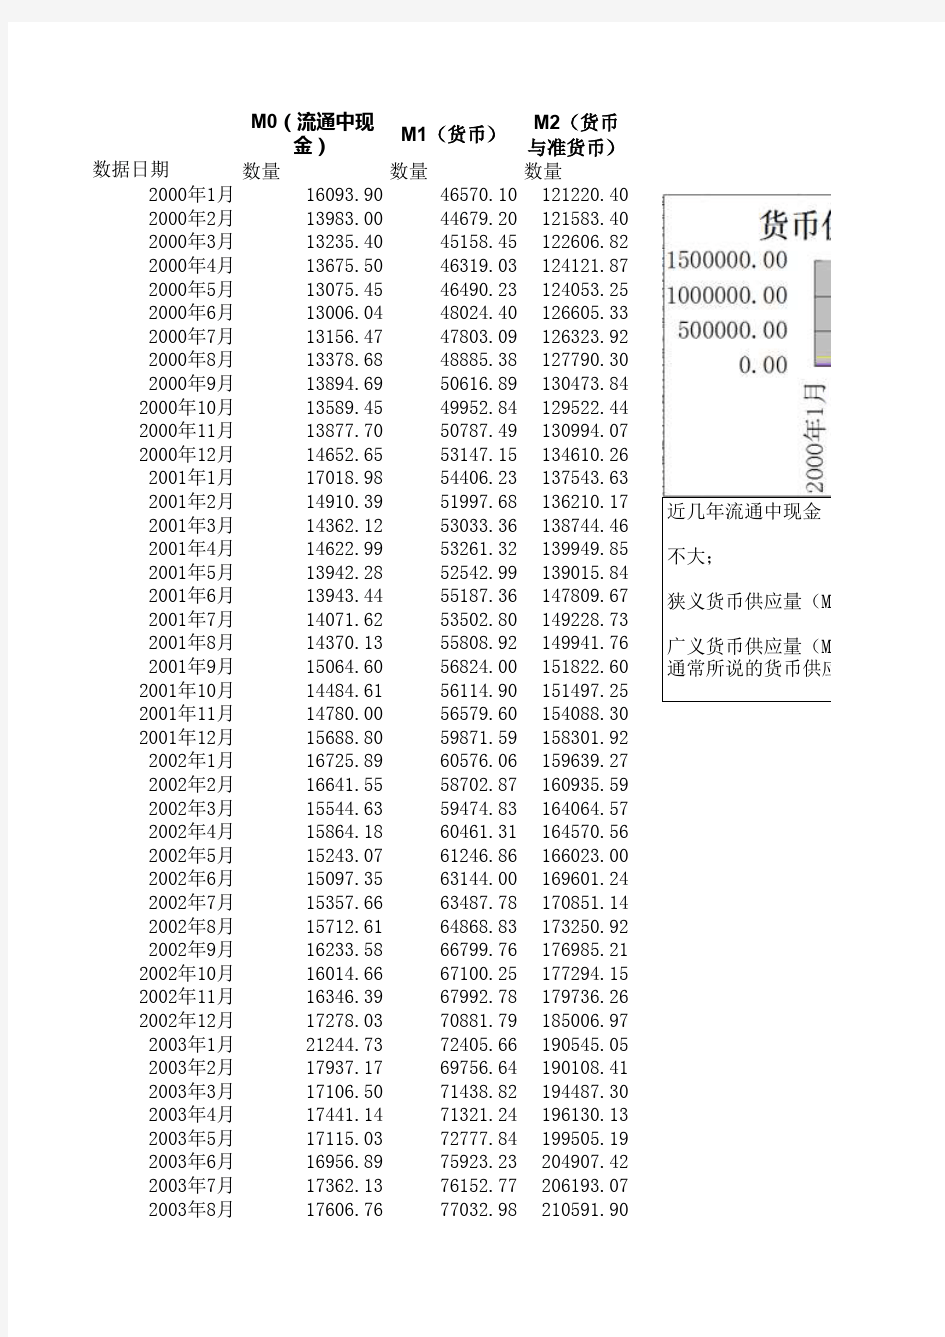 中国历年货币供应量(M0_M1_M2)2000-2014